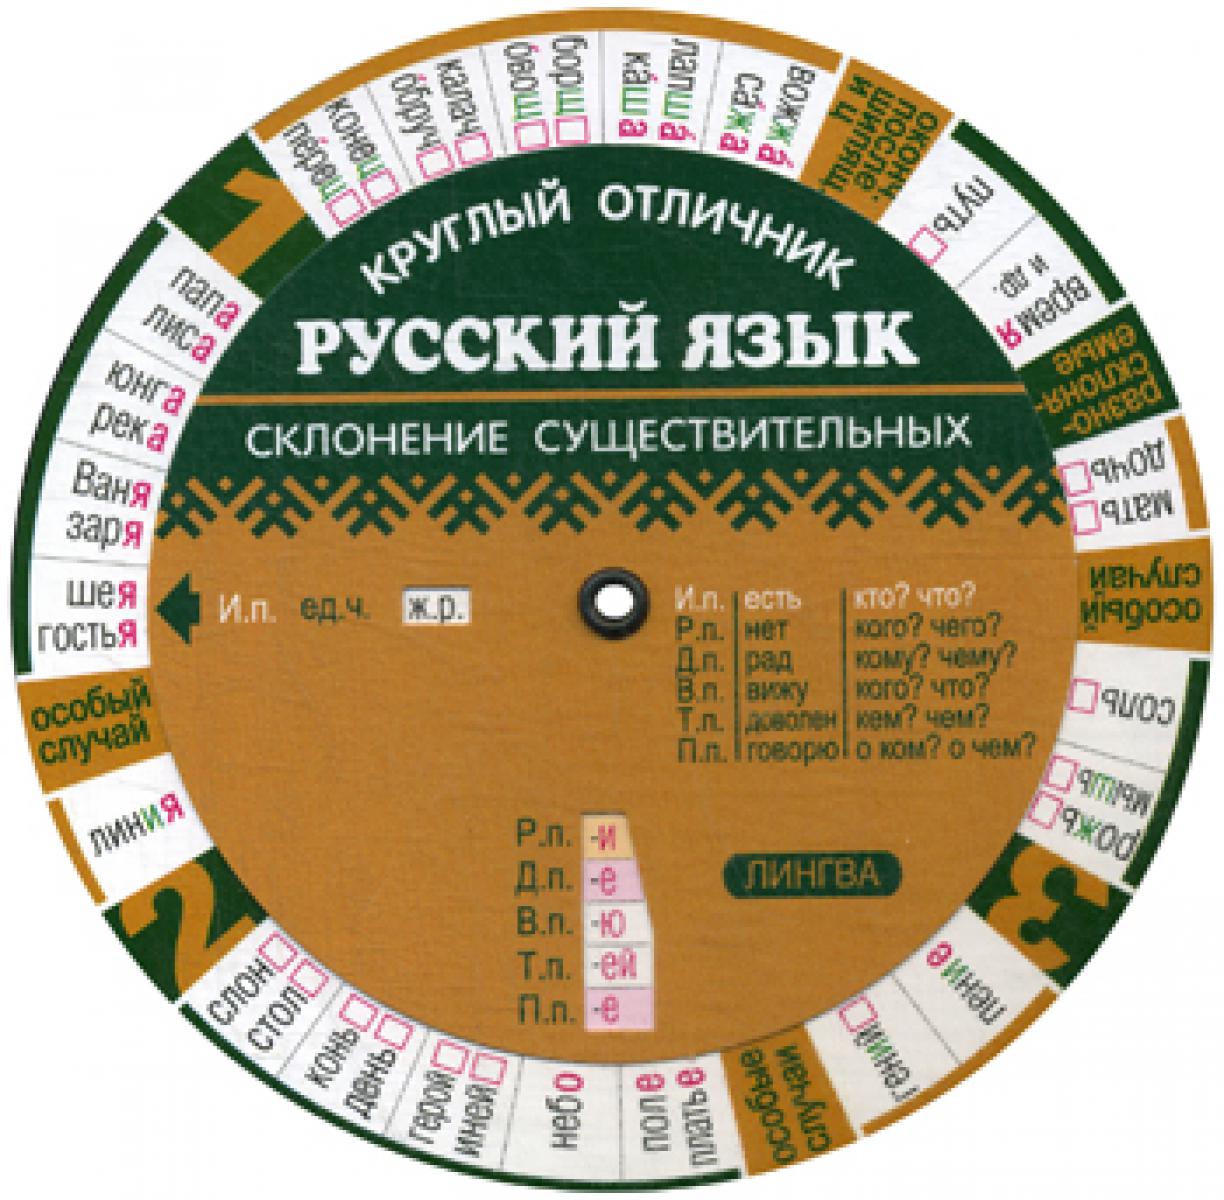 Русский язык на отлично. Склонение существительных (Таблица-вертушка).